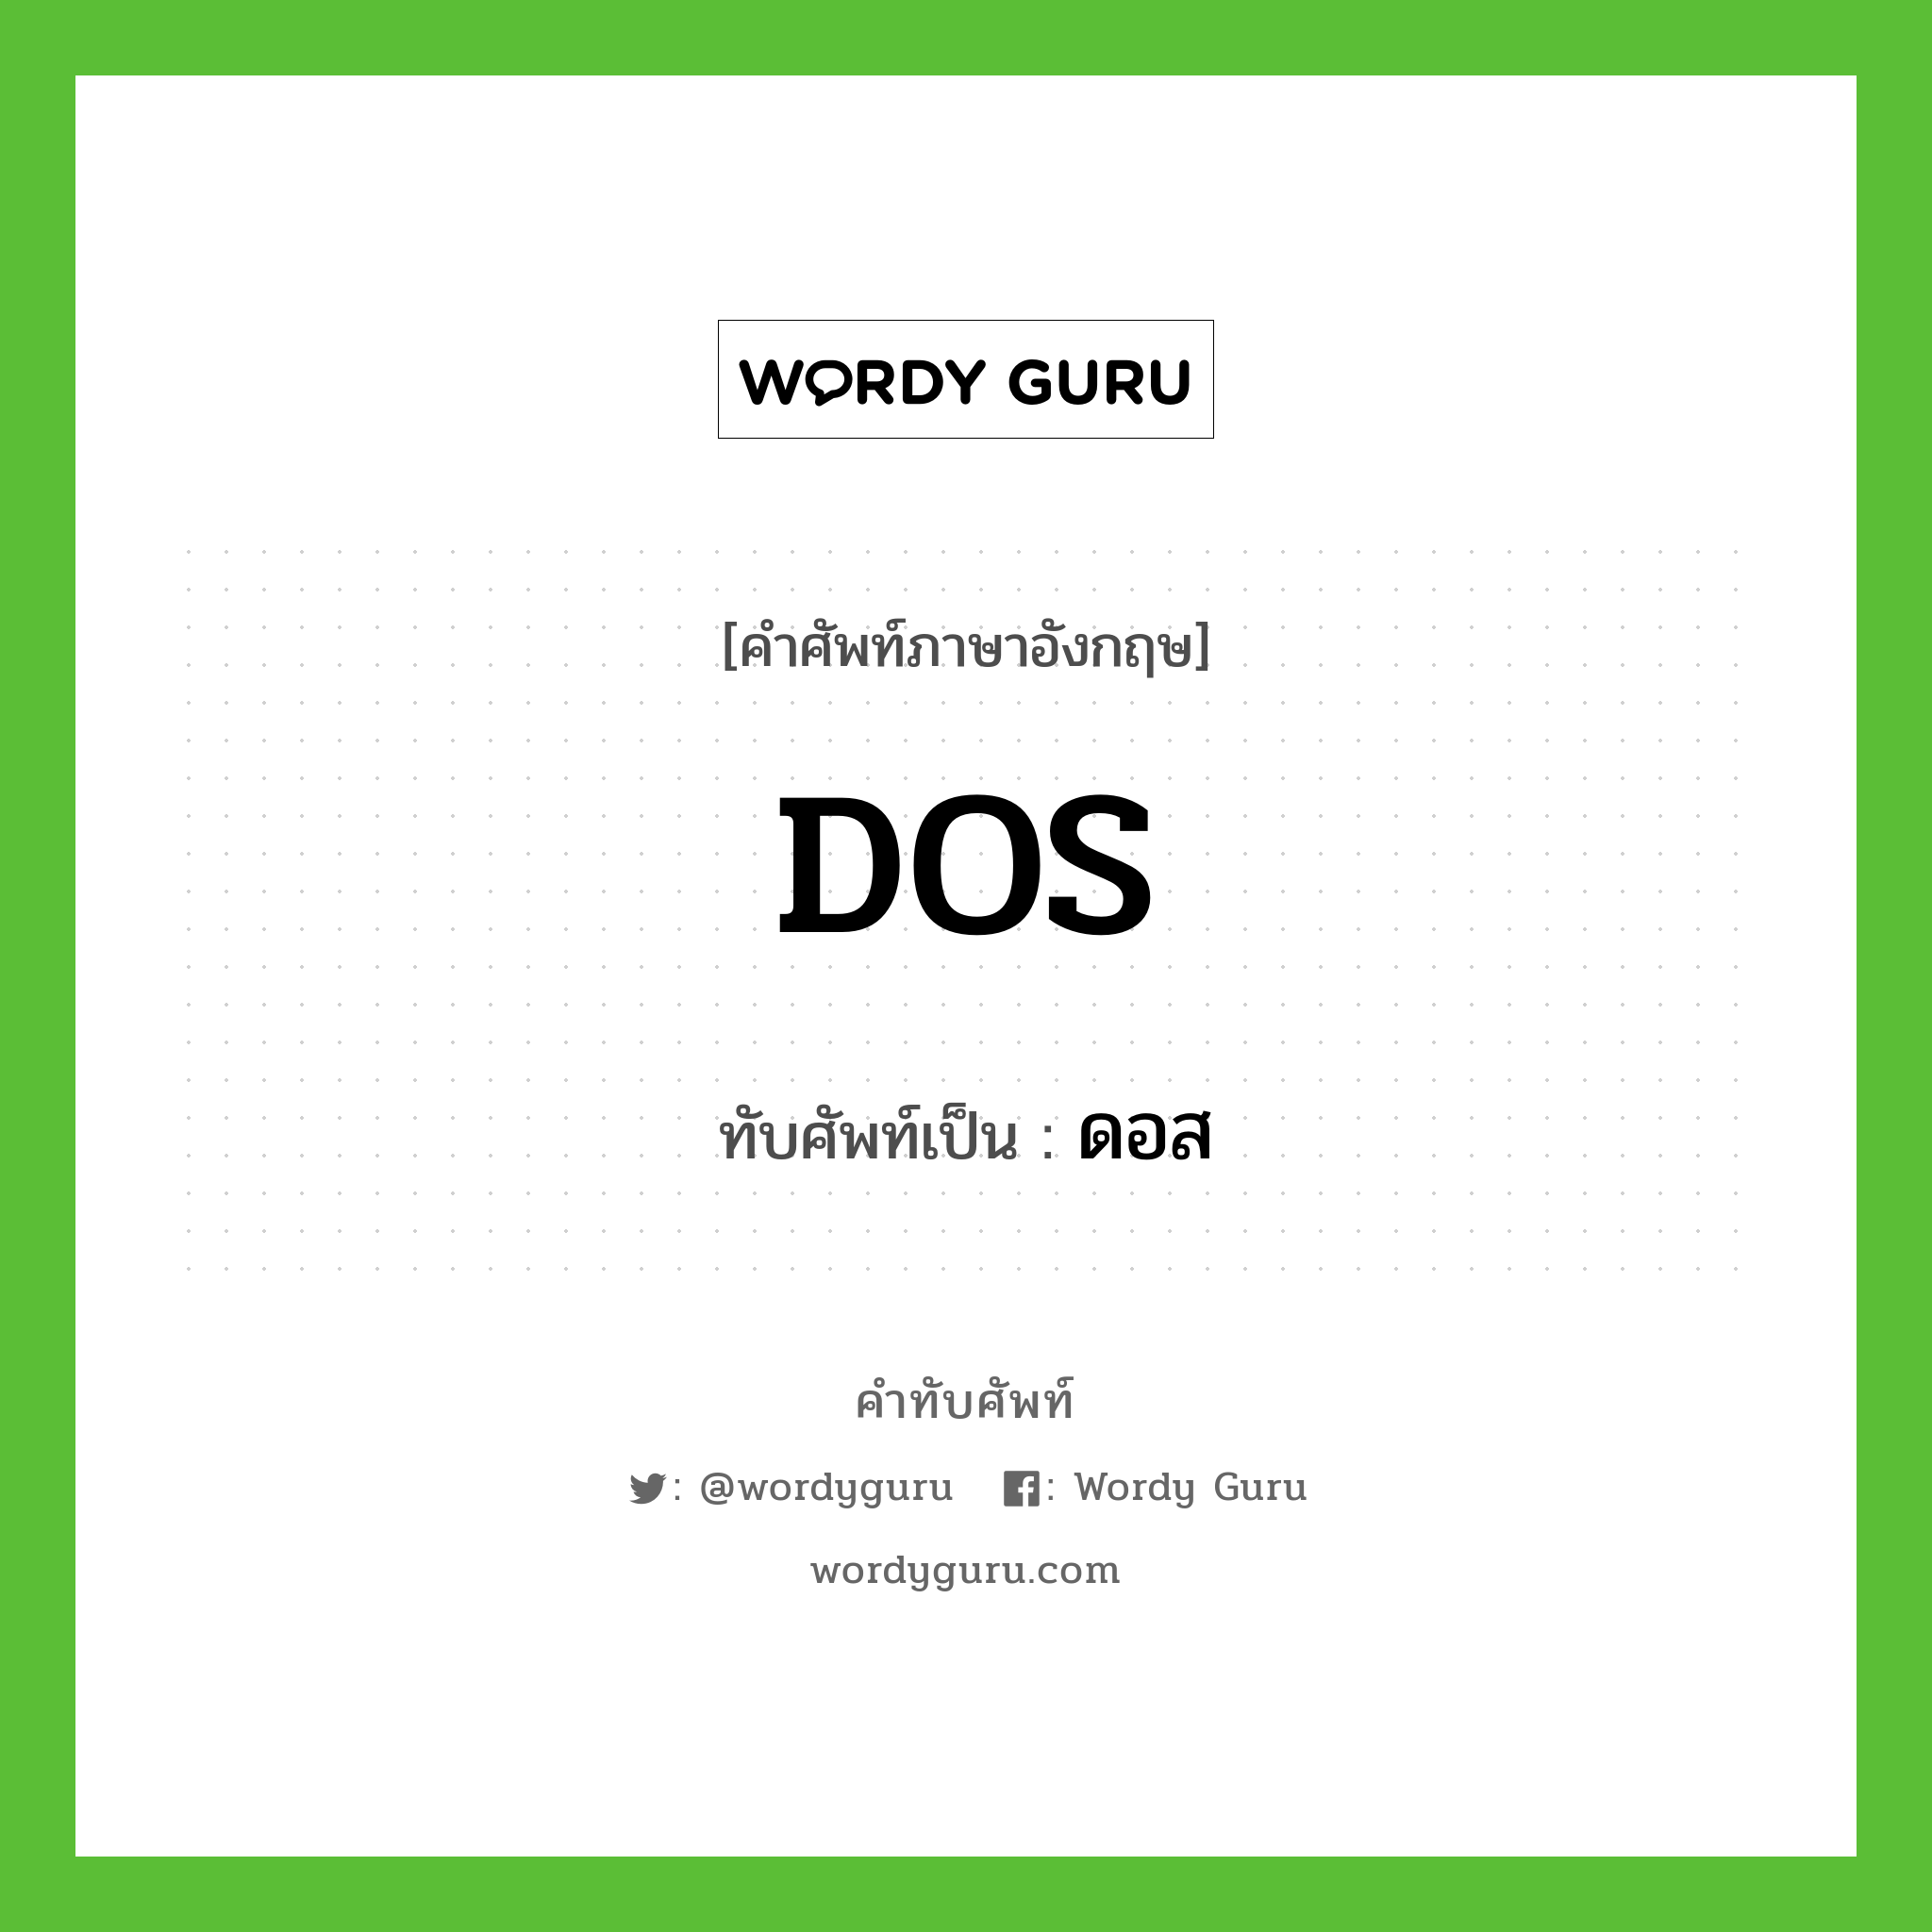 DOS เขียนเป็นคำไทยว่าอะไร?, คำศัพท์ภาษาอังกฤษ DOS ทับศัพท์เป็น ดอส